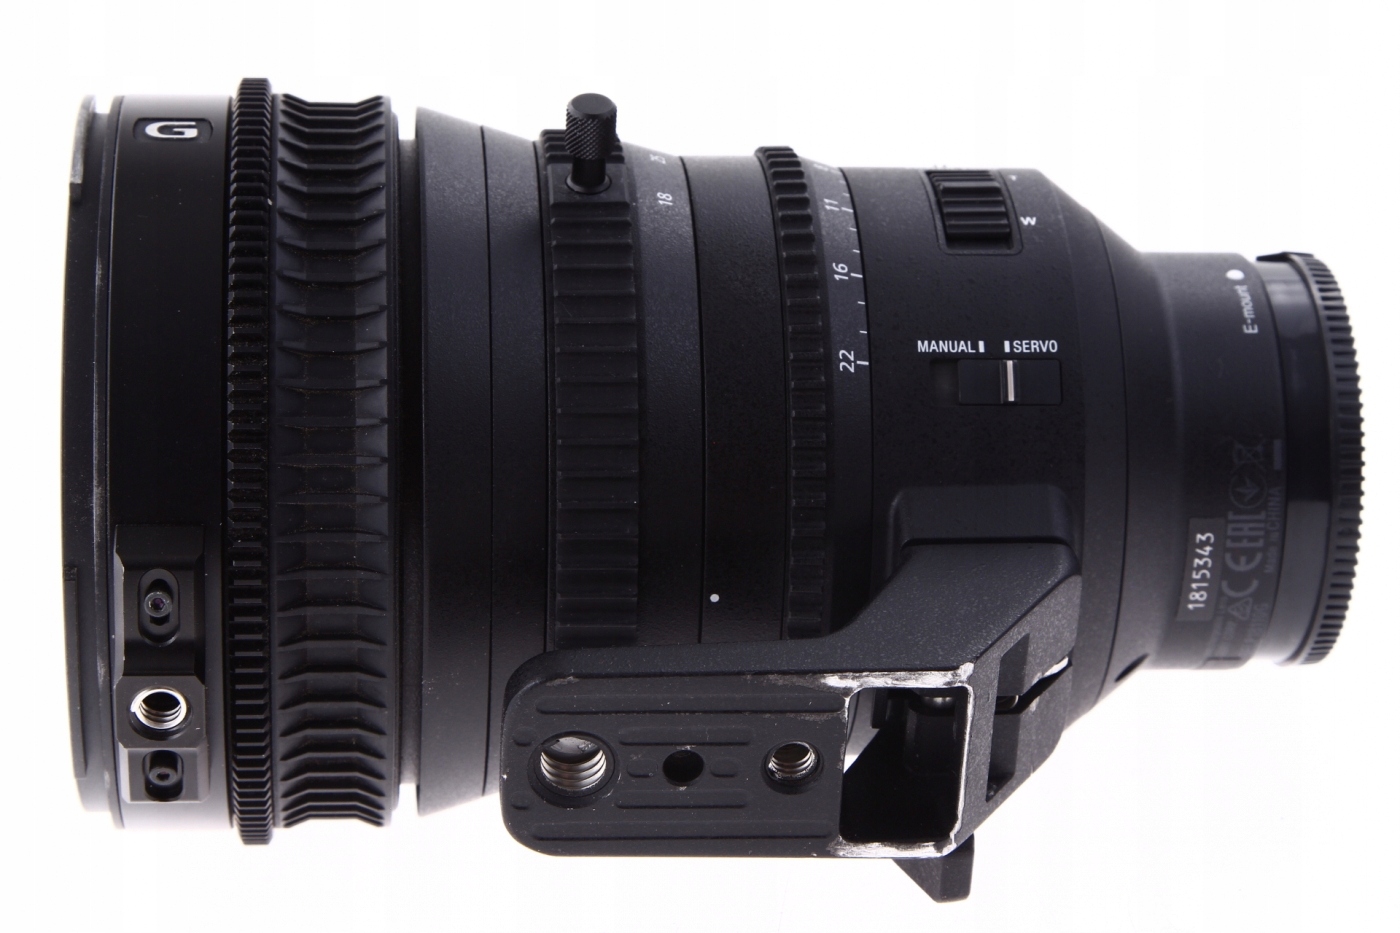 Sony objektiv E PZ 18-110mm F4 G OSS (SELP18110G) za 56517 Kč - Allegro